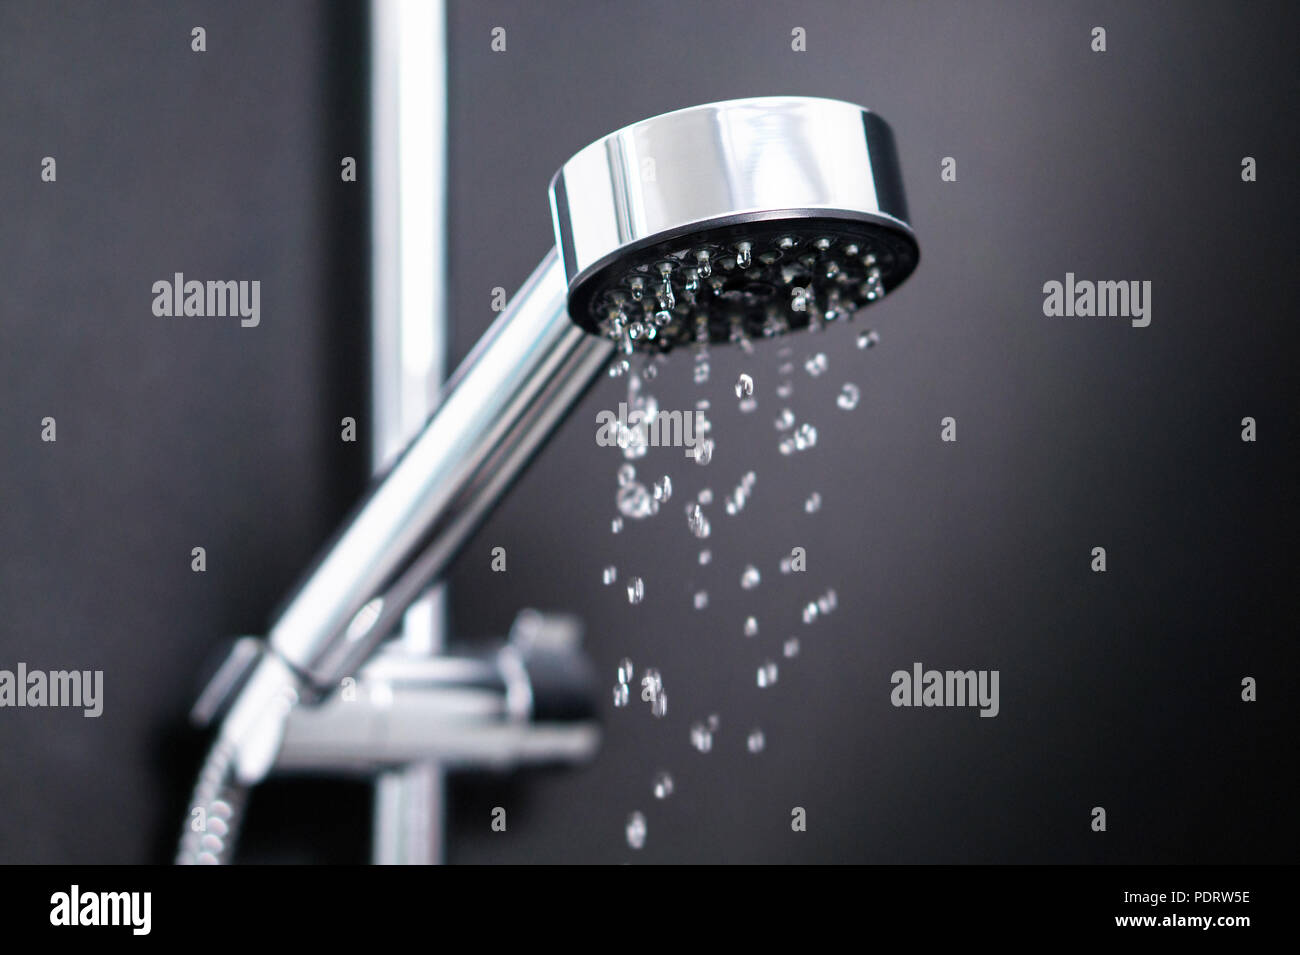 Apagado o encendido un chorro de agua en la ducha. Apellidos o gotas salpicaduras de grifo. El consumo de agua, Bill, el ahorro, la escasez y el concepto de ecología. Foto de stock